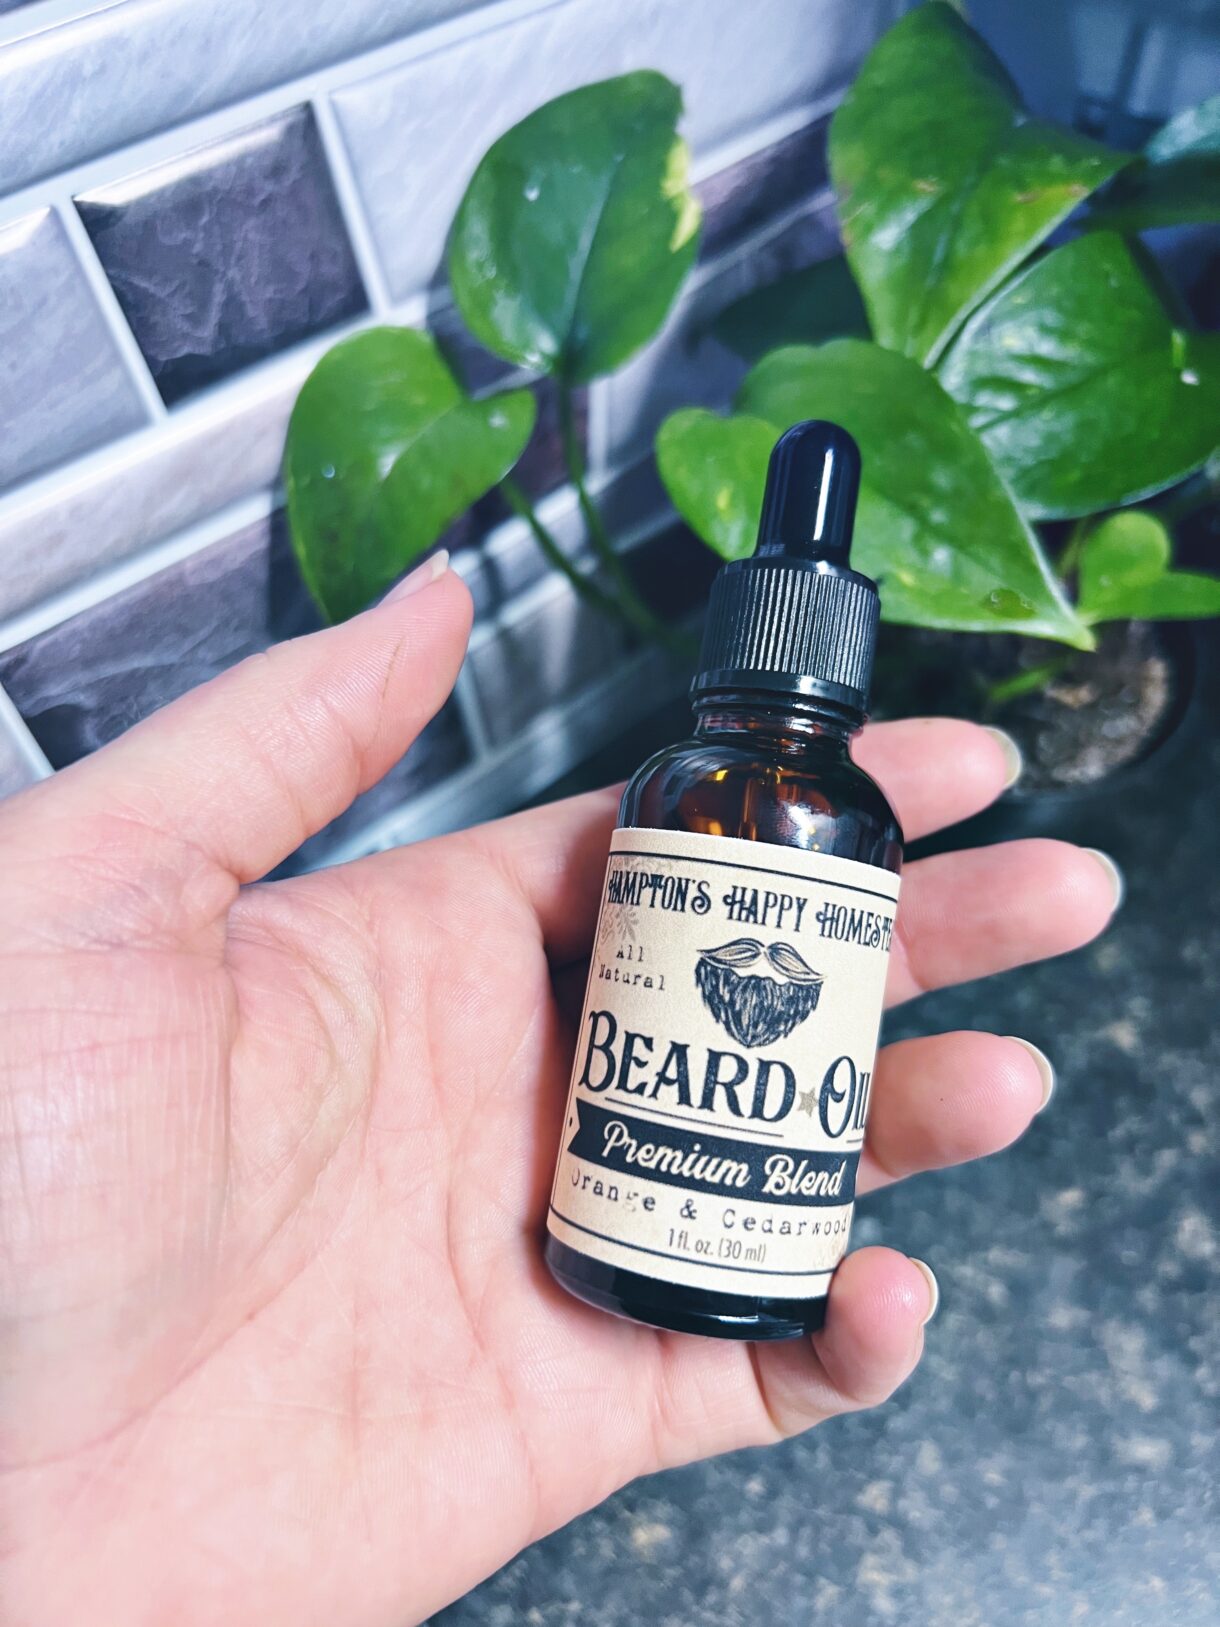 Beard Oil Orange & Cedarwood